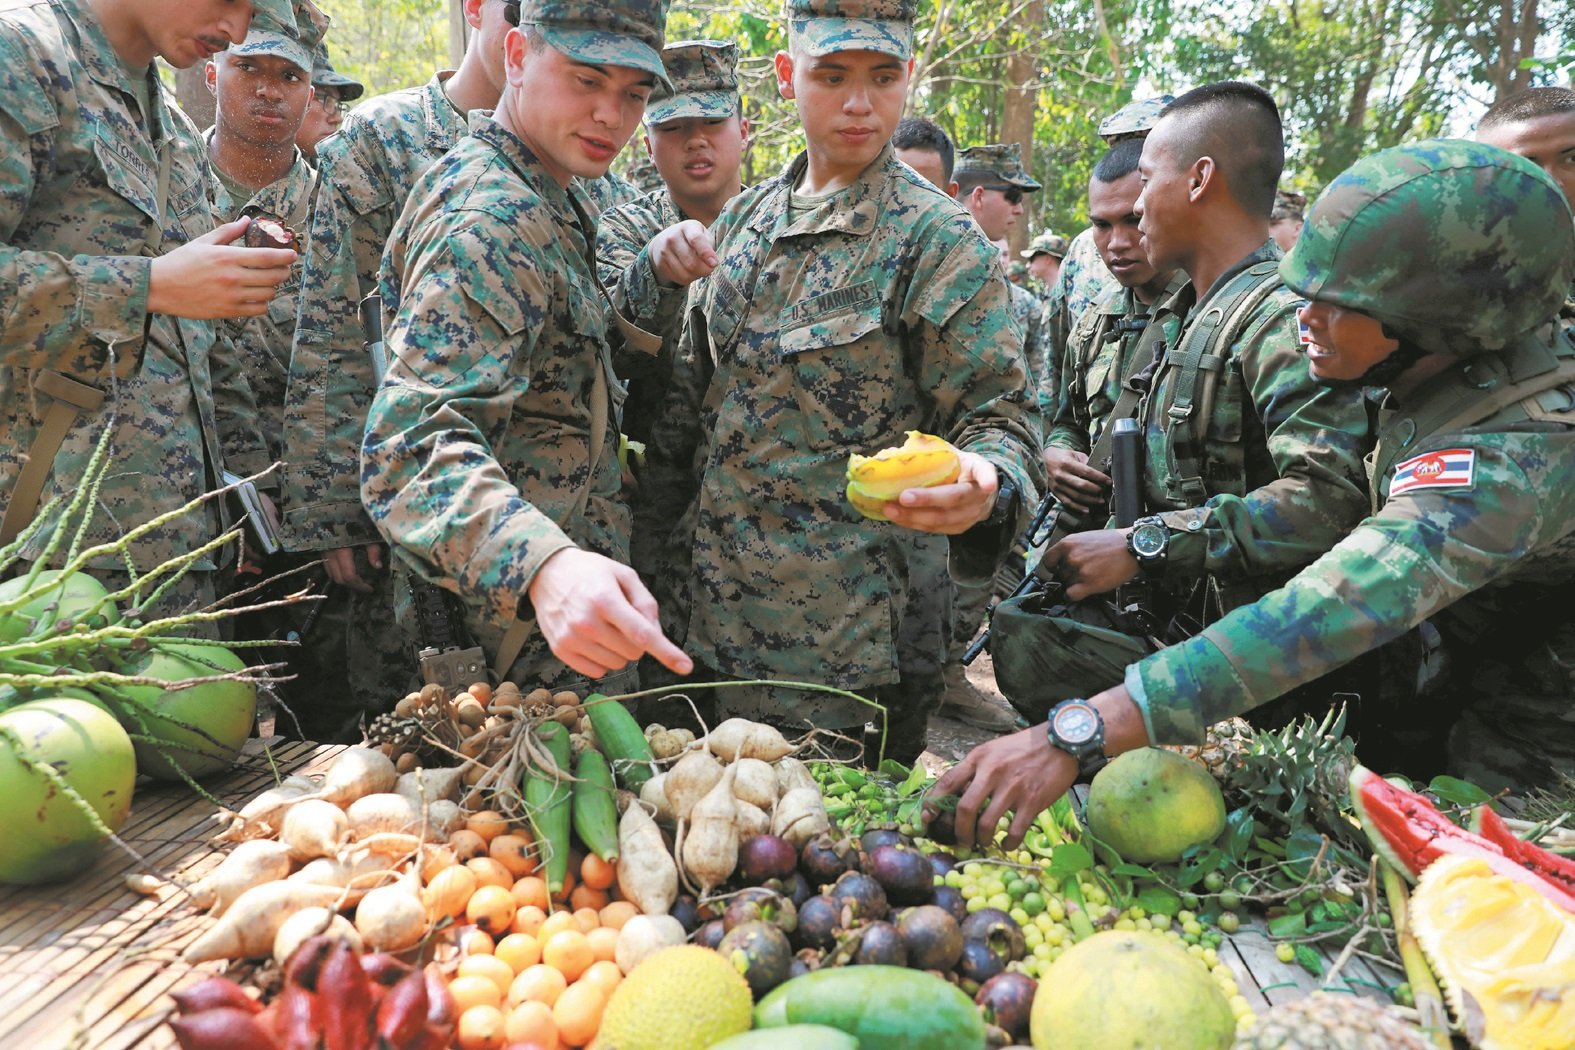 身为此次军演东道主的泰国，准备了各式各样的本土水果让美兵品 尝。泰国士兵（右）向美国士兵介绍他们国家的水果，包括椰子、 山竹、蛇皮果、杨桃、龙眼等。